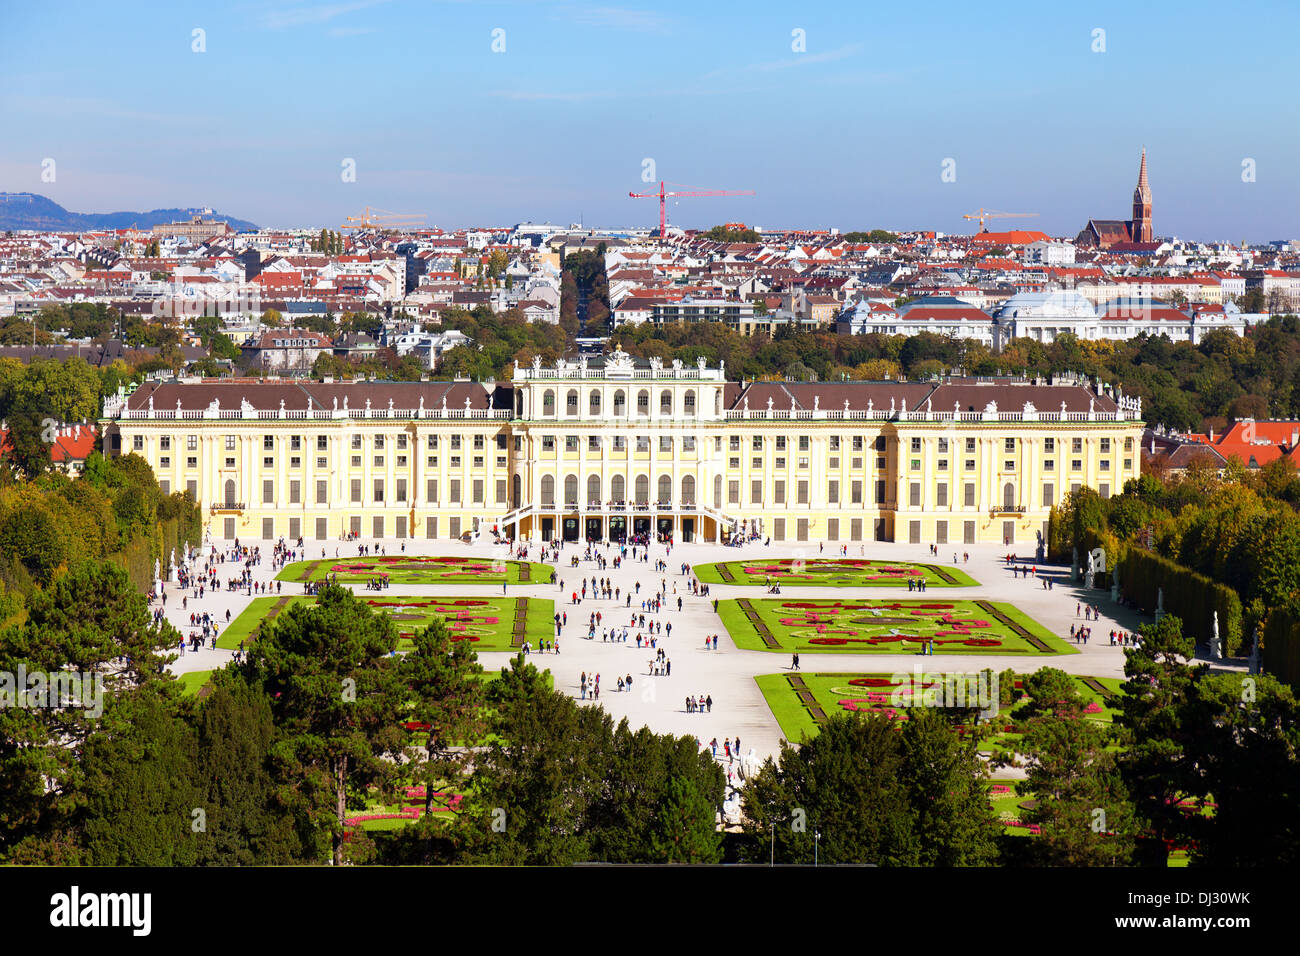 Schonbrunn Palace in Vienna, Austria Stock Photo